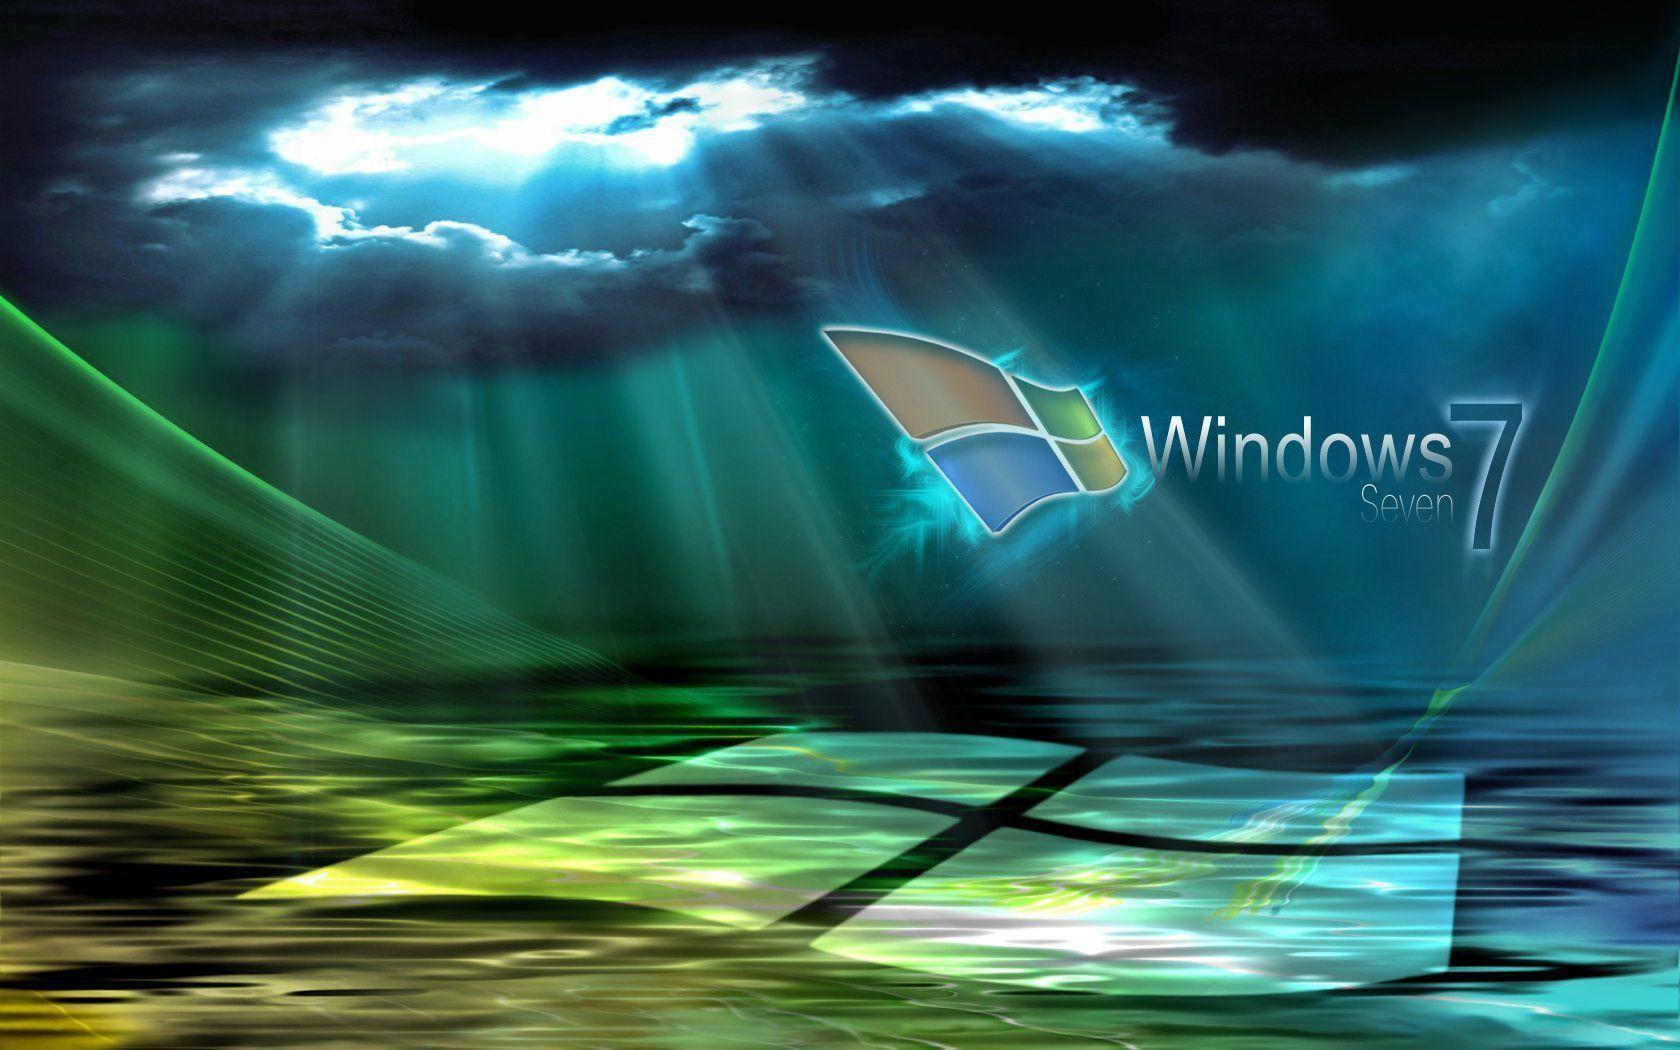 windows 7 sun cloud, iPhone Wallpaper, Facebook Cover, Twitter